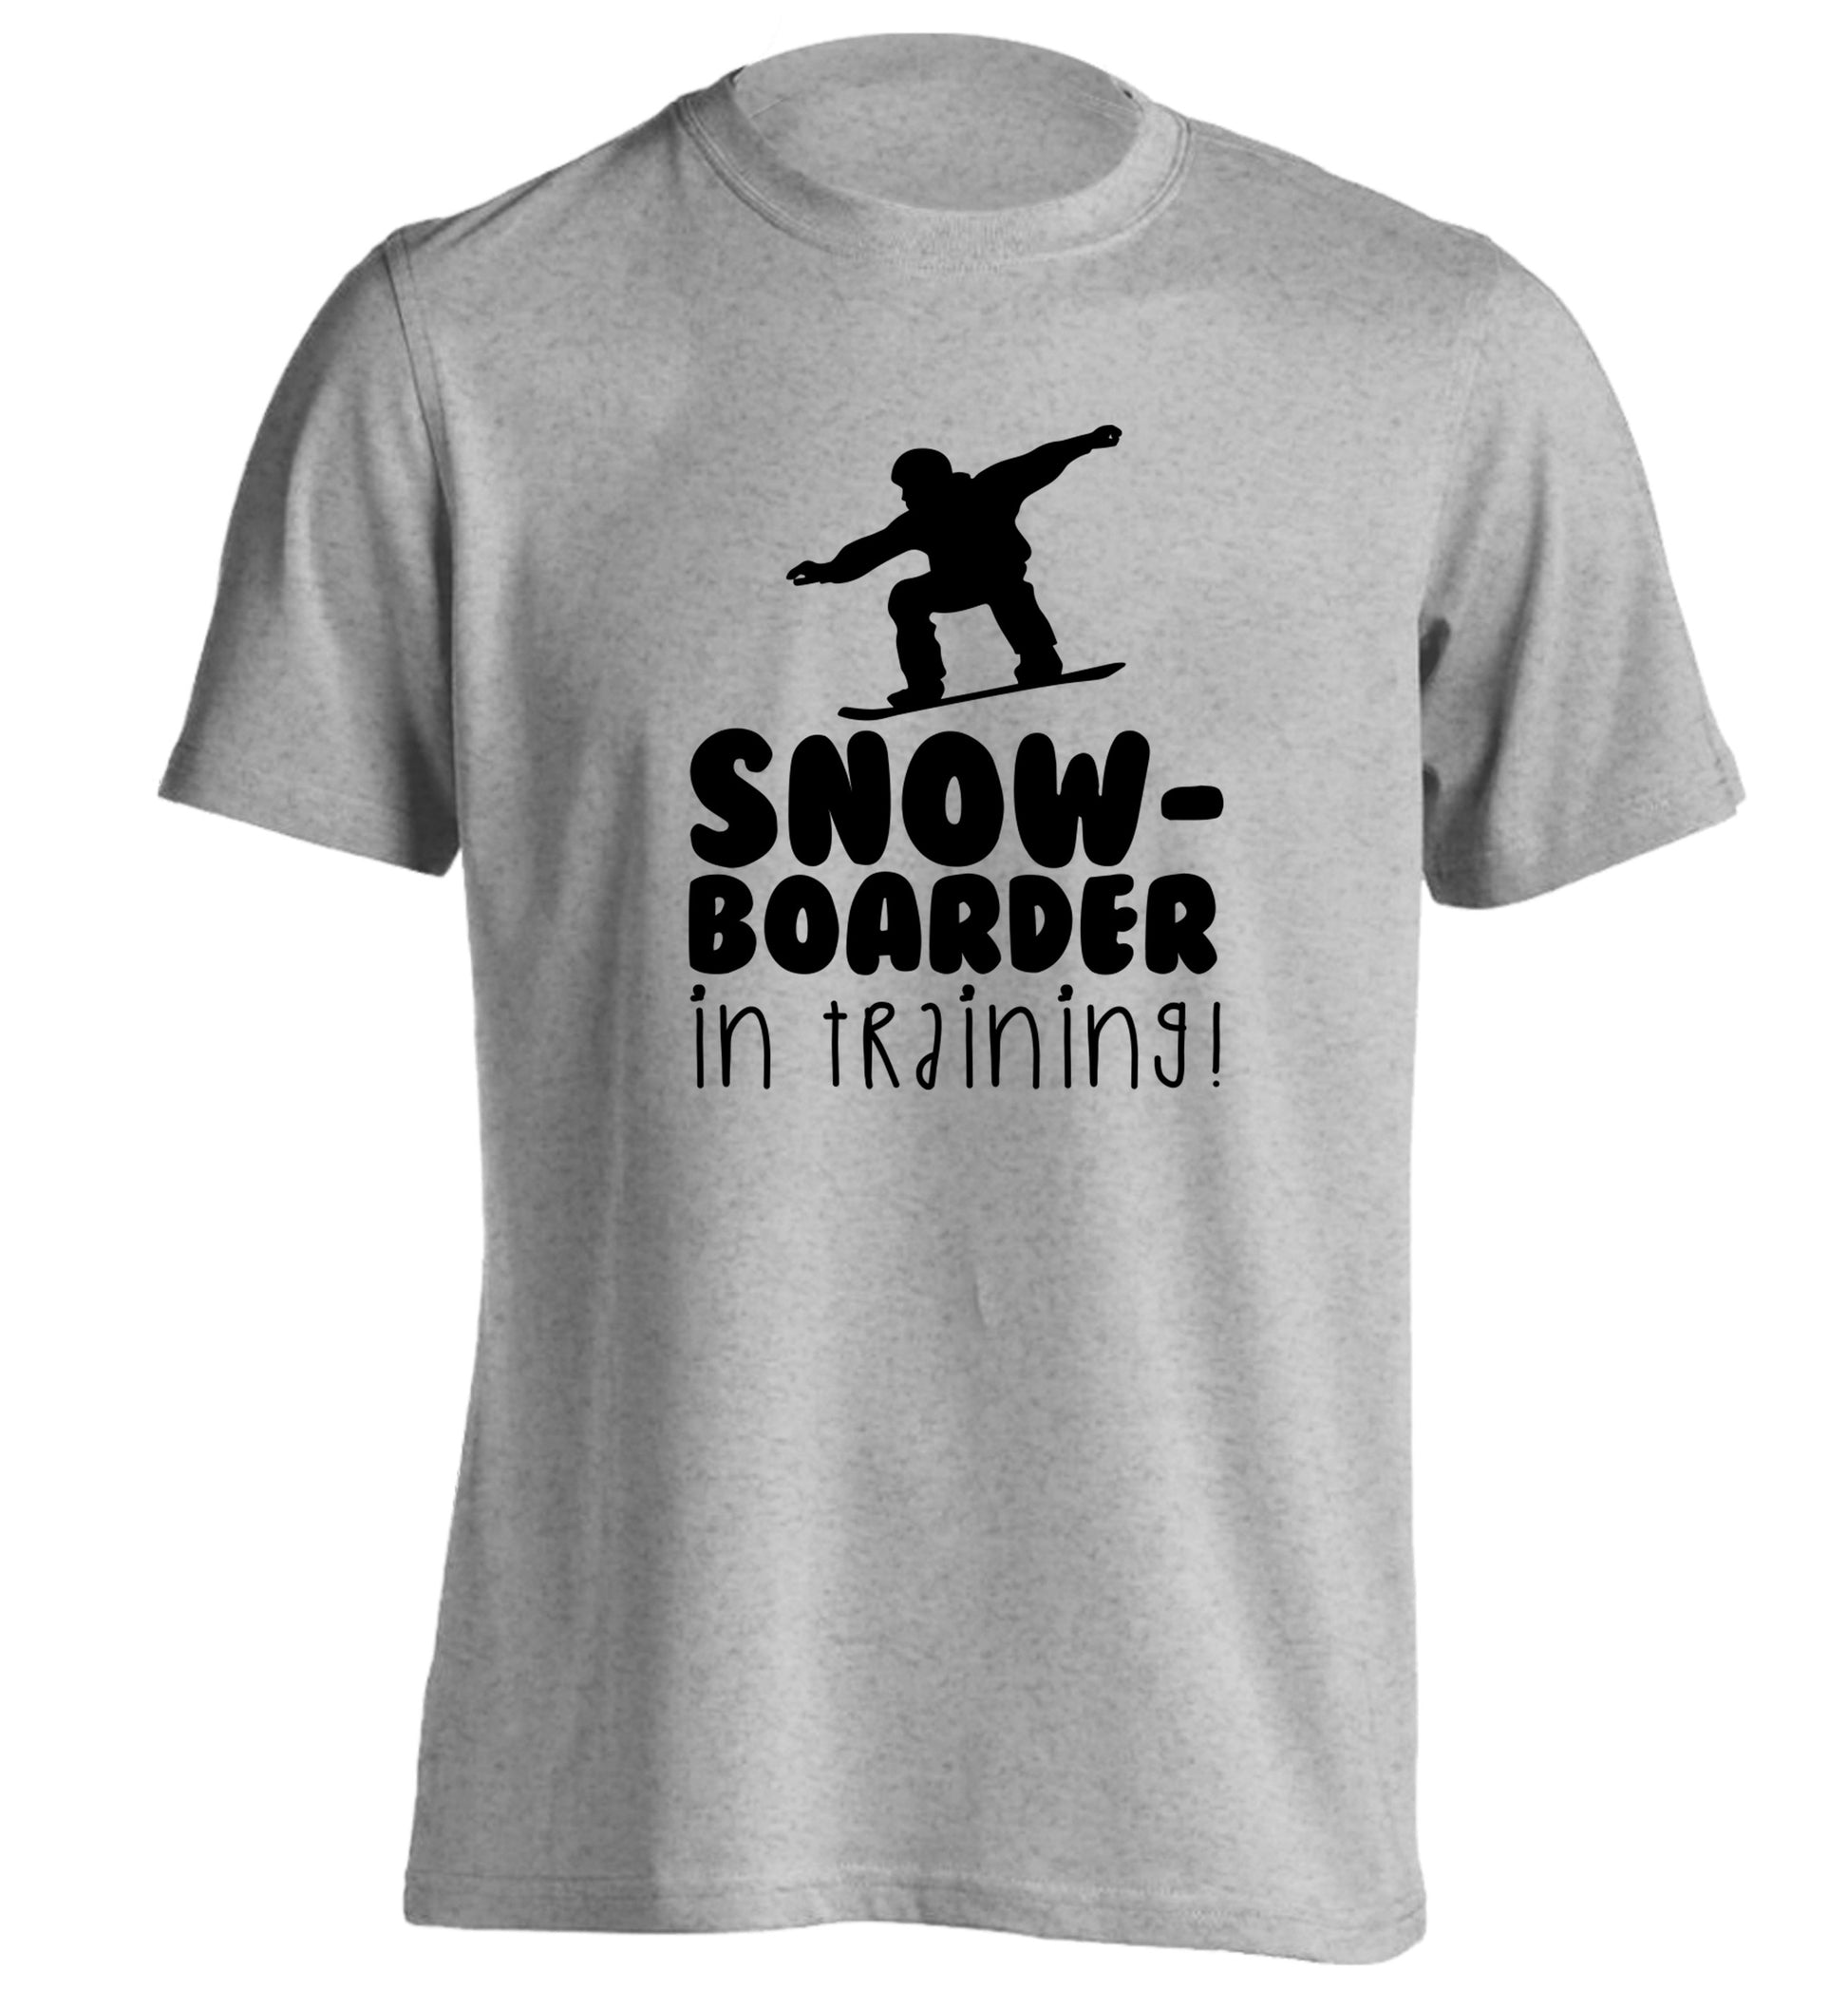 Snowboarder in training adults unisex grey Tshirt 2XL